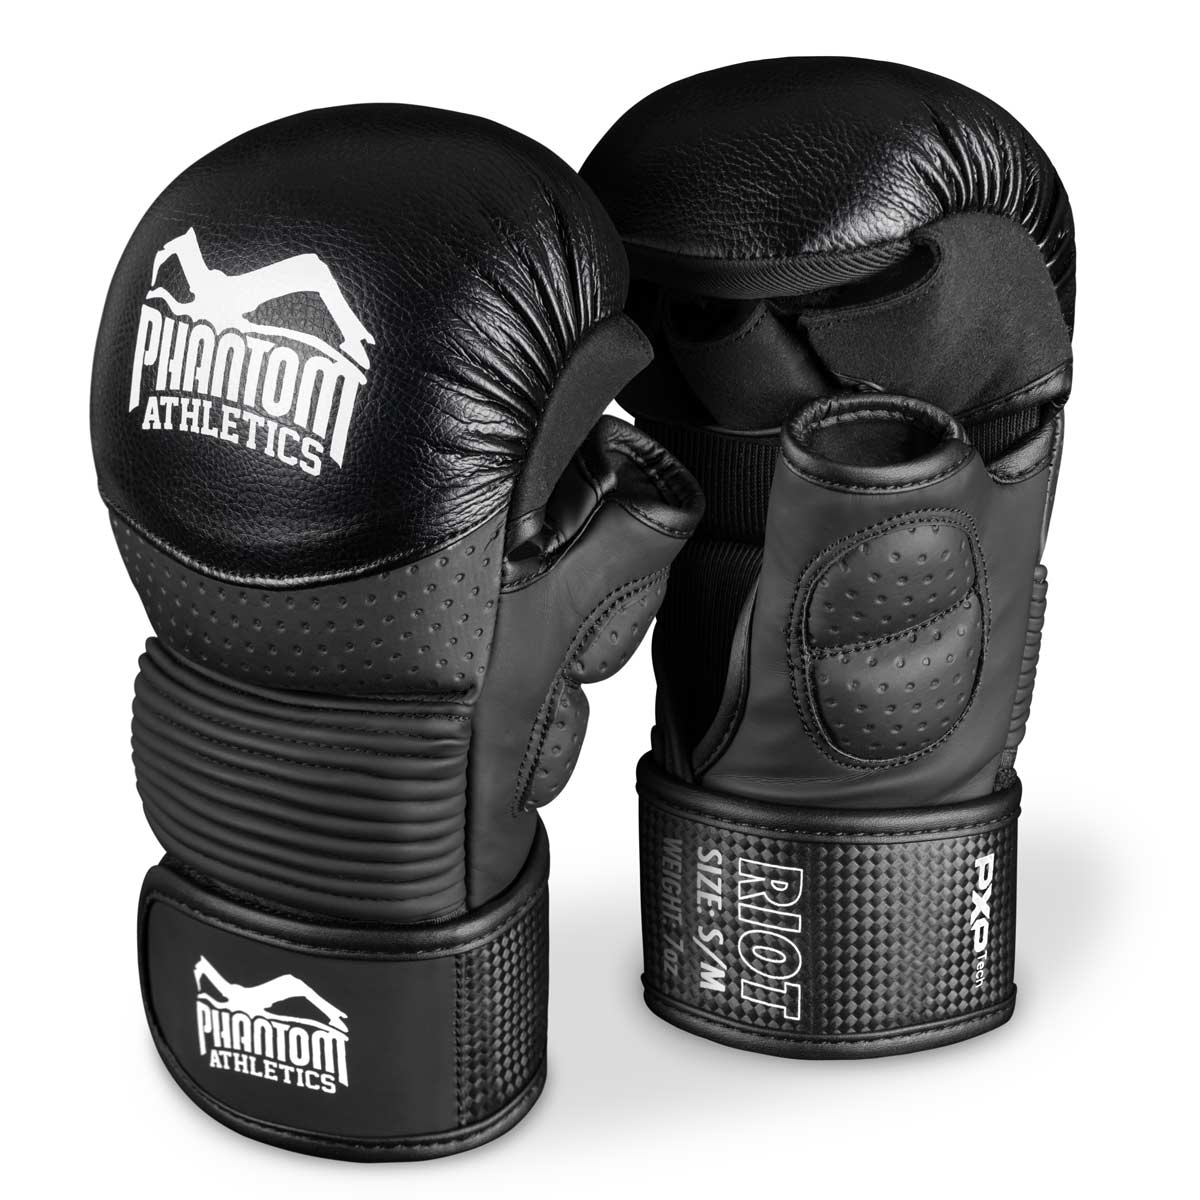 As luvas de sparring Phantom RIOT PRO MMA. Ideal para o seu treinamento de artes marciais e competições amadoras. As luvas de MMA da mais alta qualidade e seguras do mercado. Ajuste perfeito e qualidade superior para treinamento e sparring.